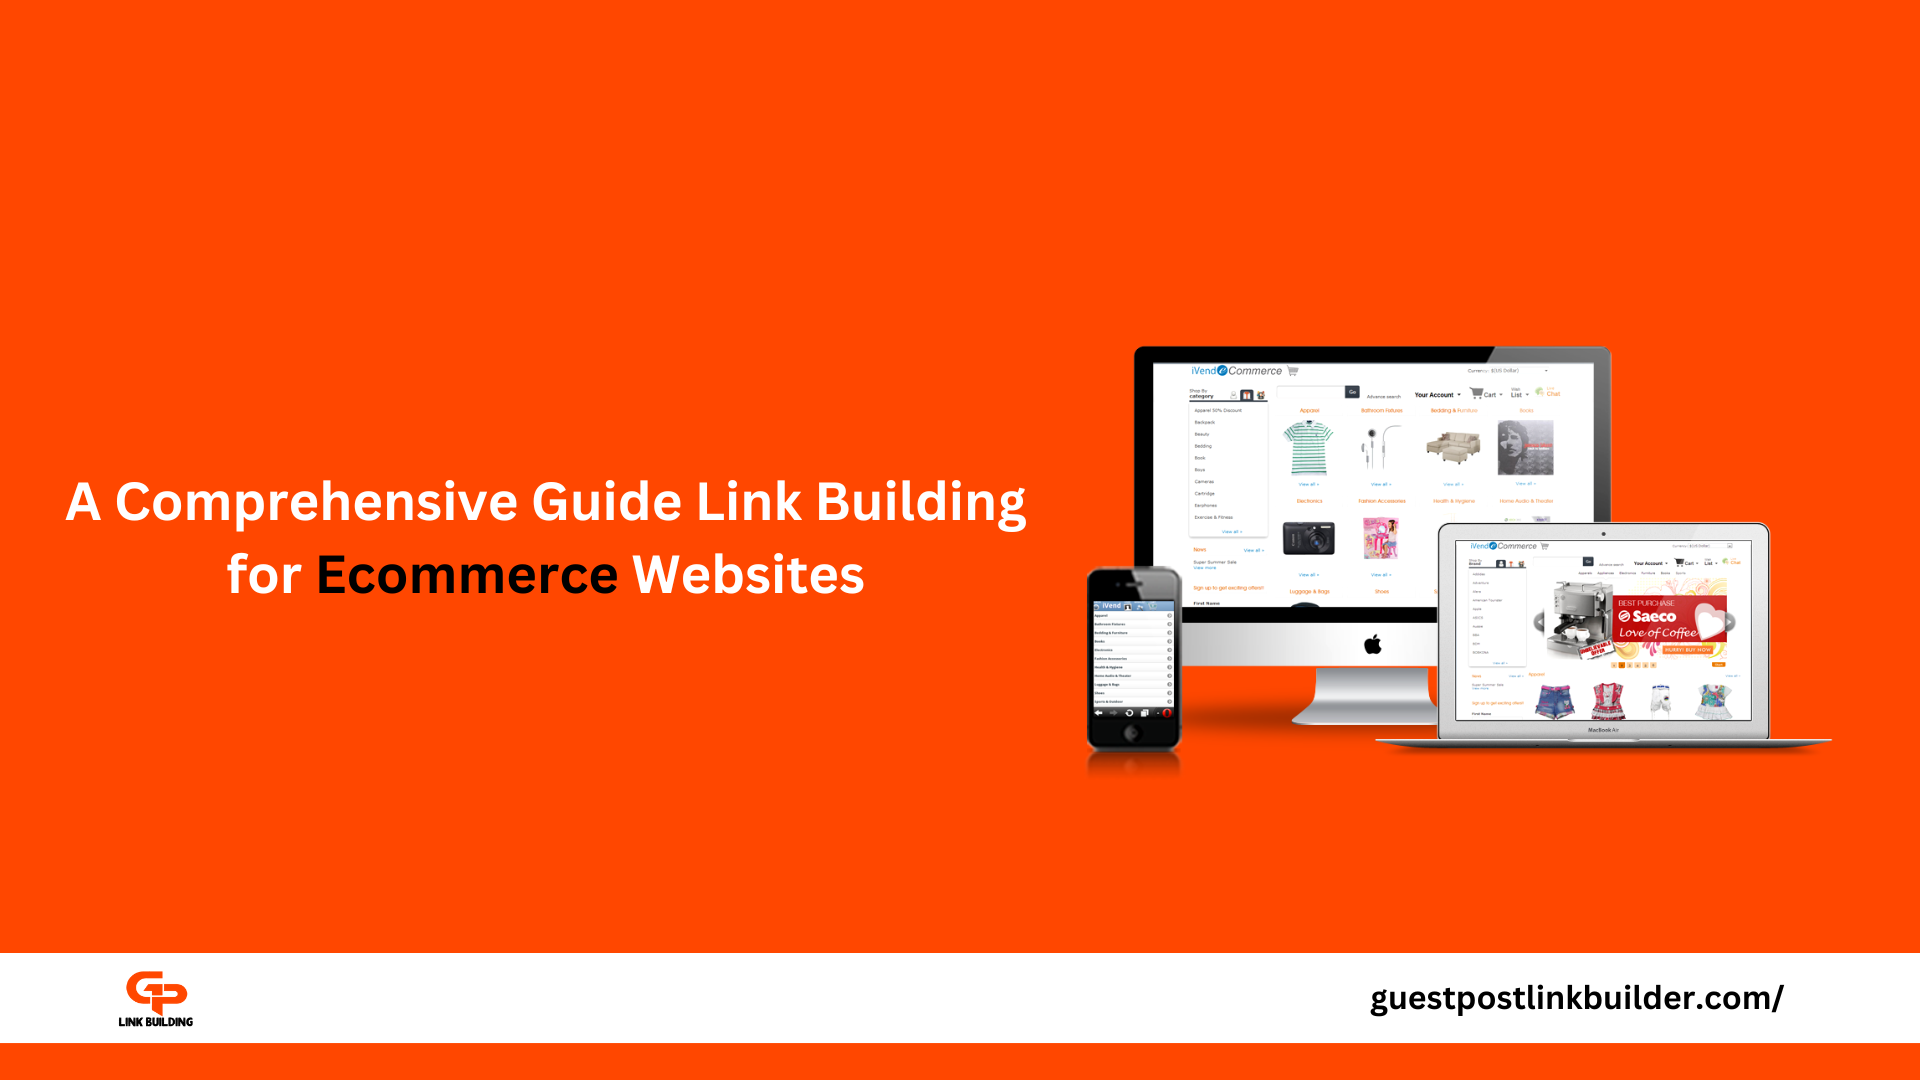 A Comprehensive Guide Link Building for Ecommerce Websites